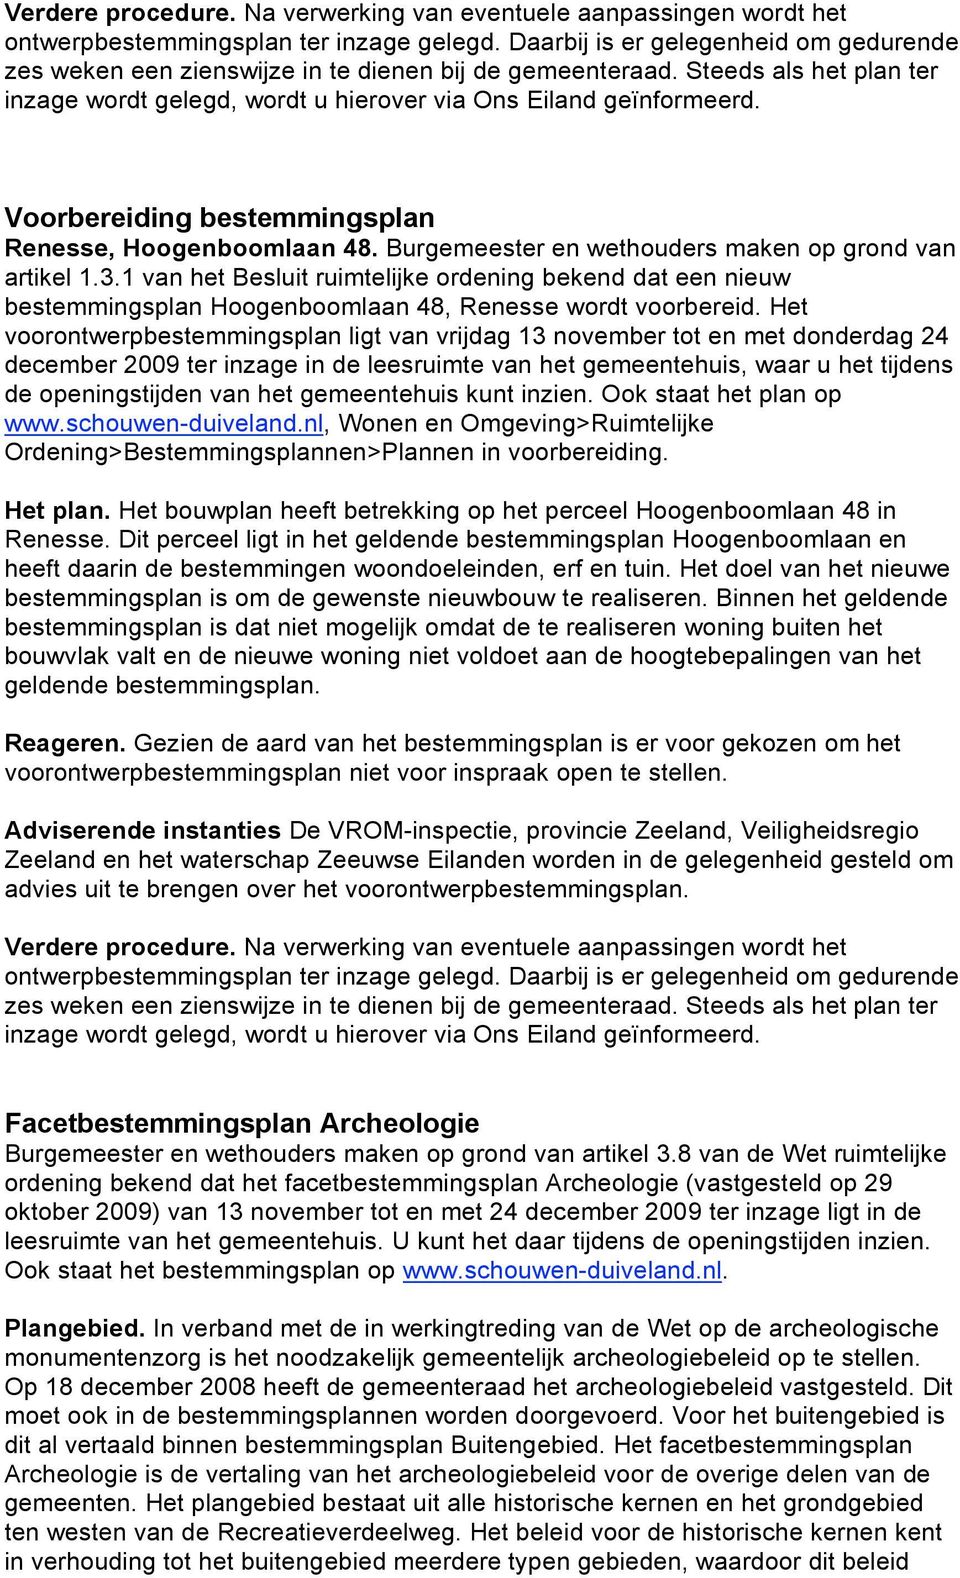 Voorbereiding bestemmingsplan Renesse, Hoogenboomlaan 48. Burgemeester en wethouders maken op grond van artikel 1.3.